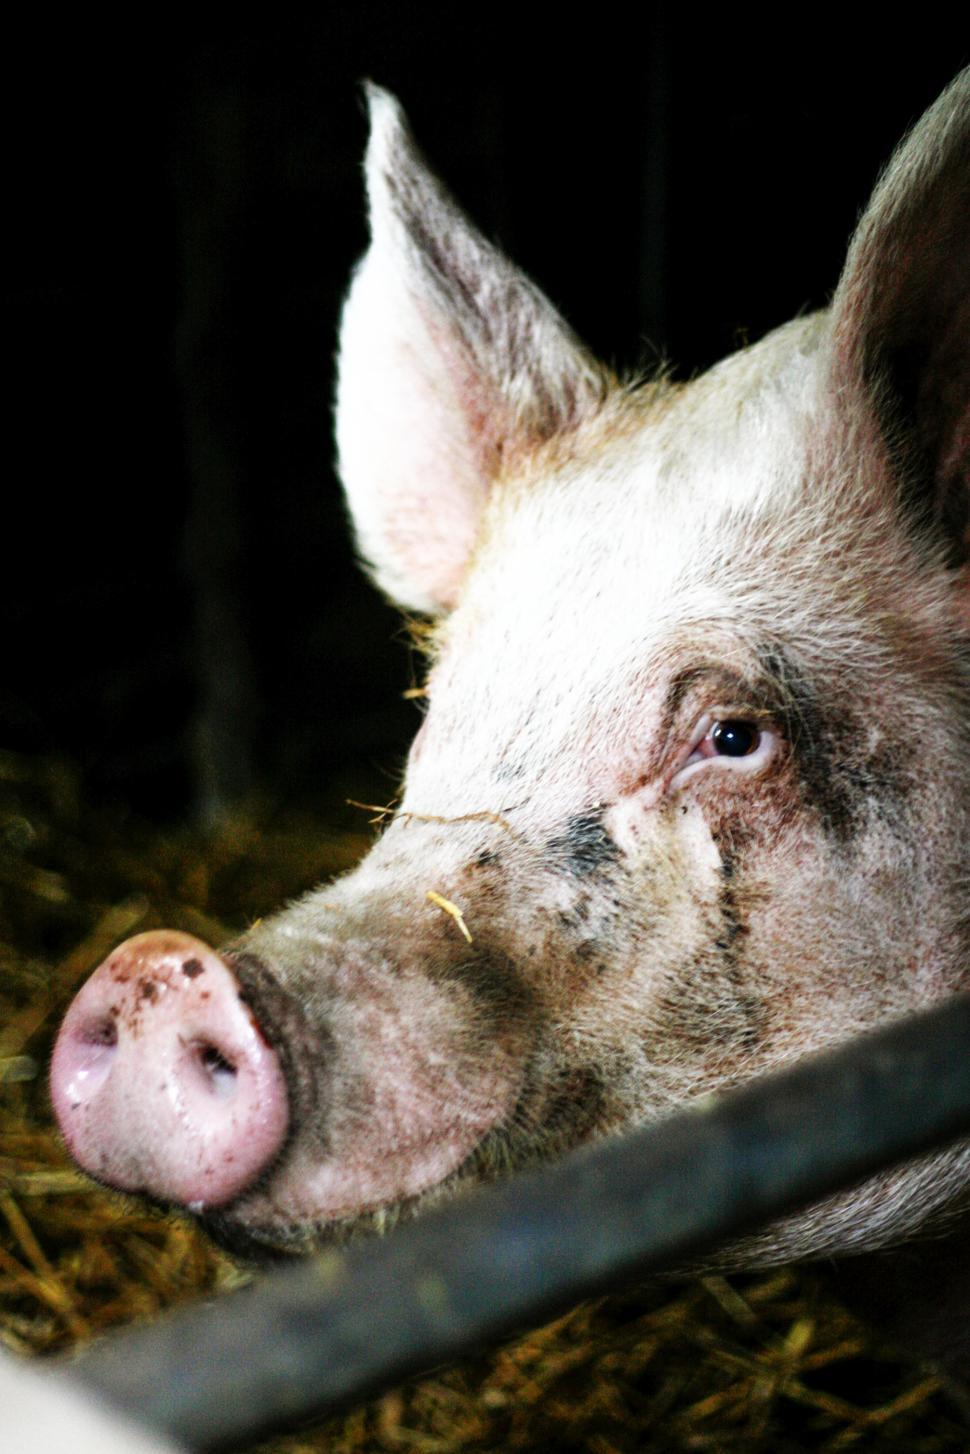 Free Image of Close-up of a pig eye staring at the camera 